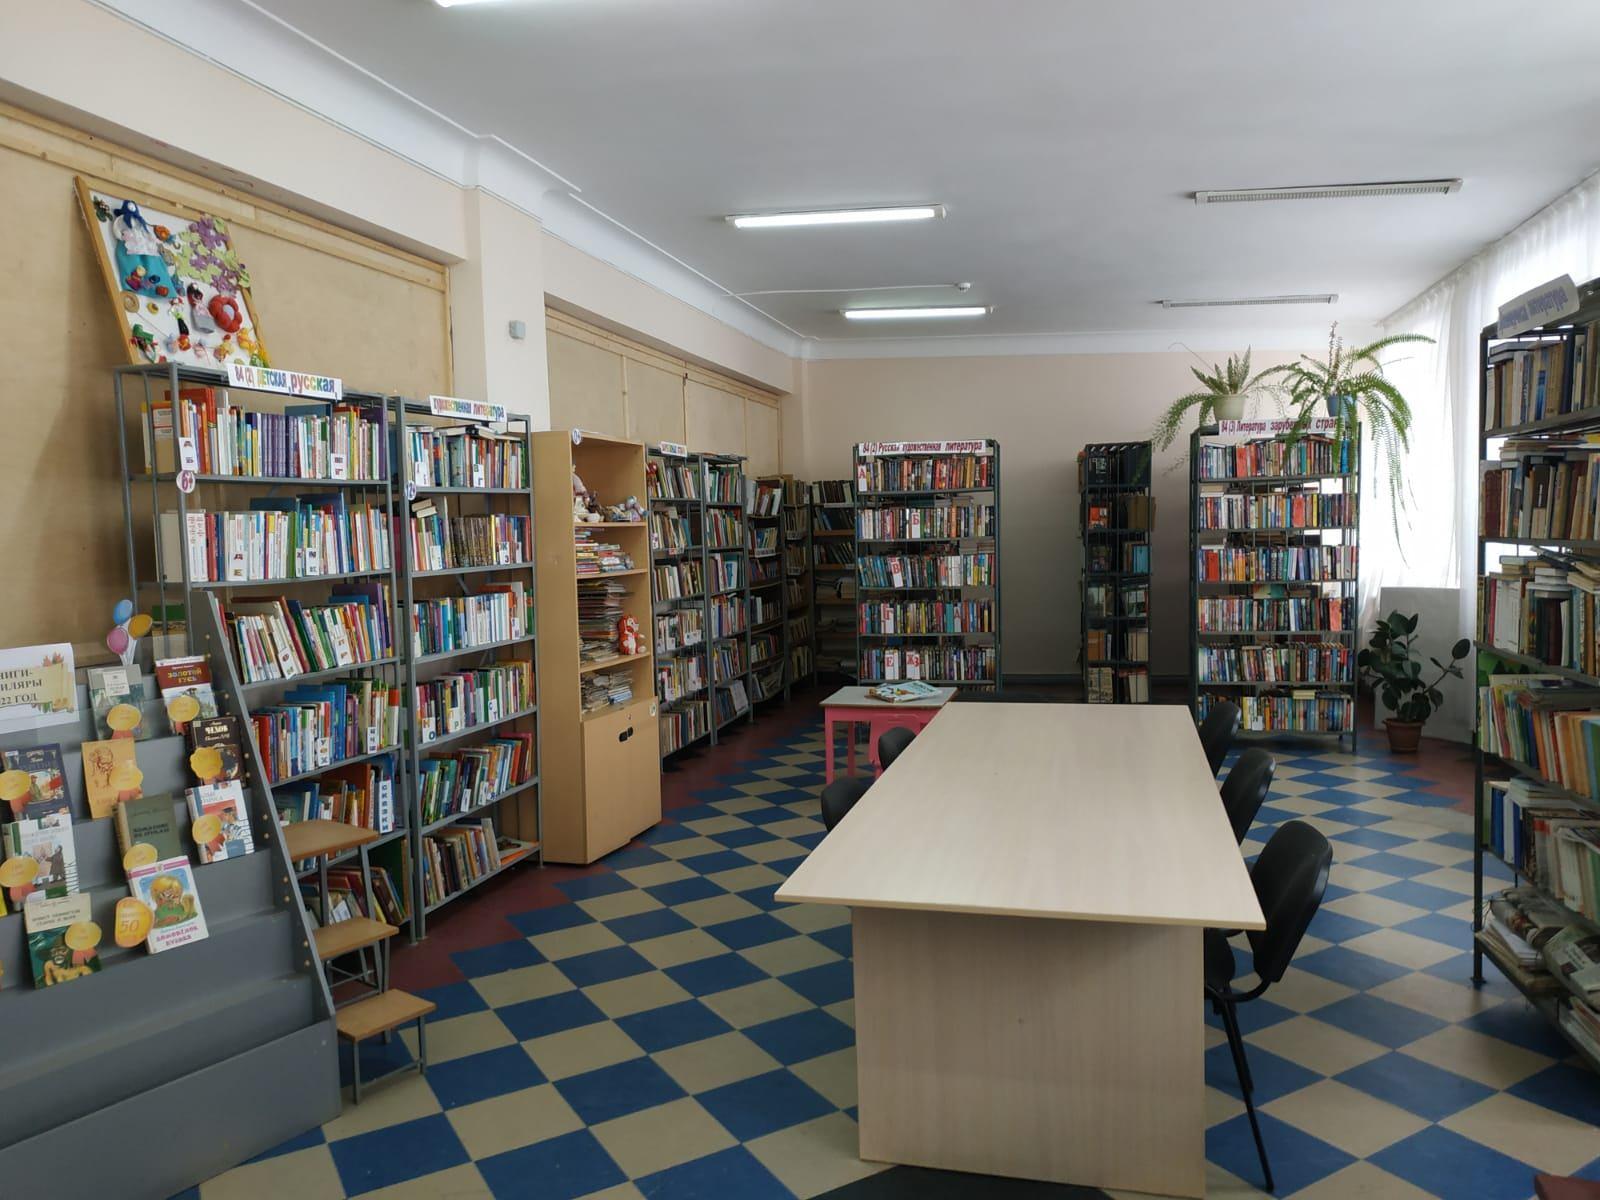 Библиотека ставропольского края